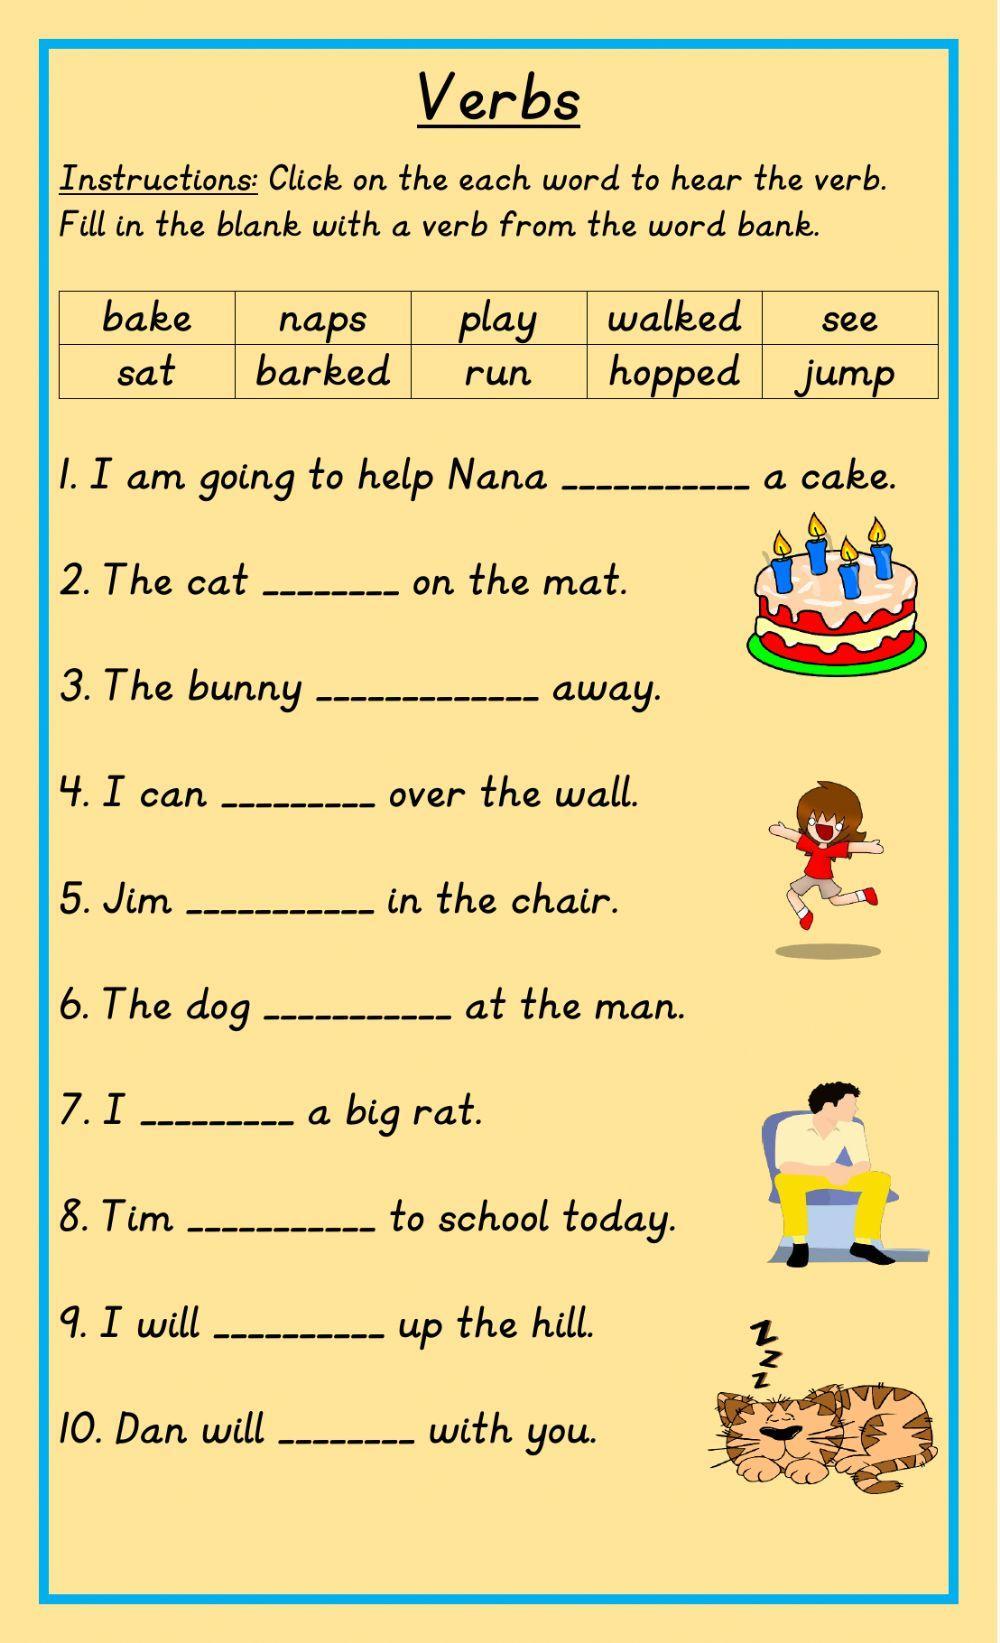 Verbs in Sentences